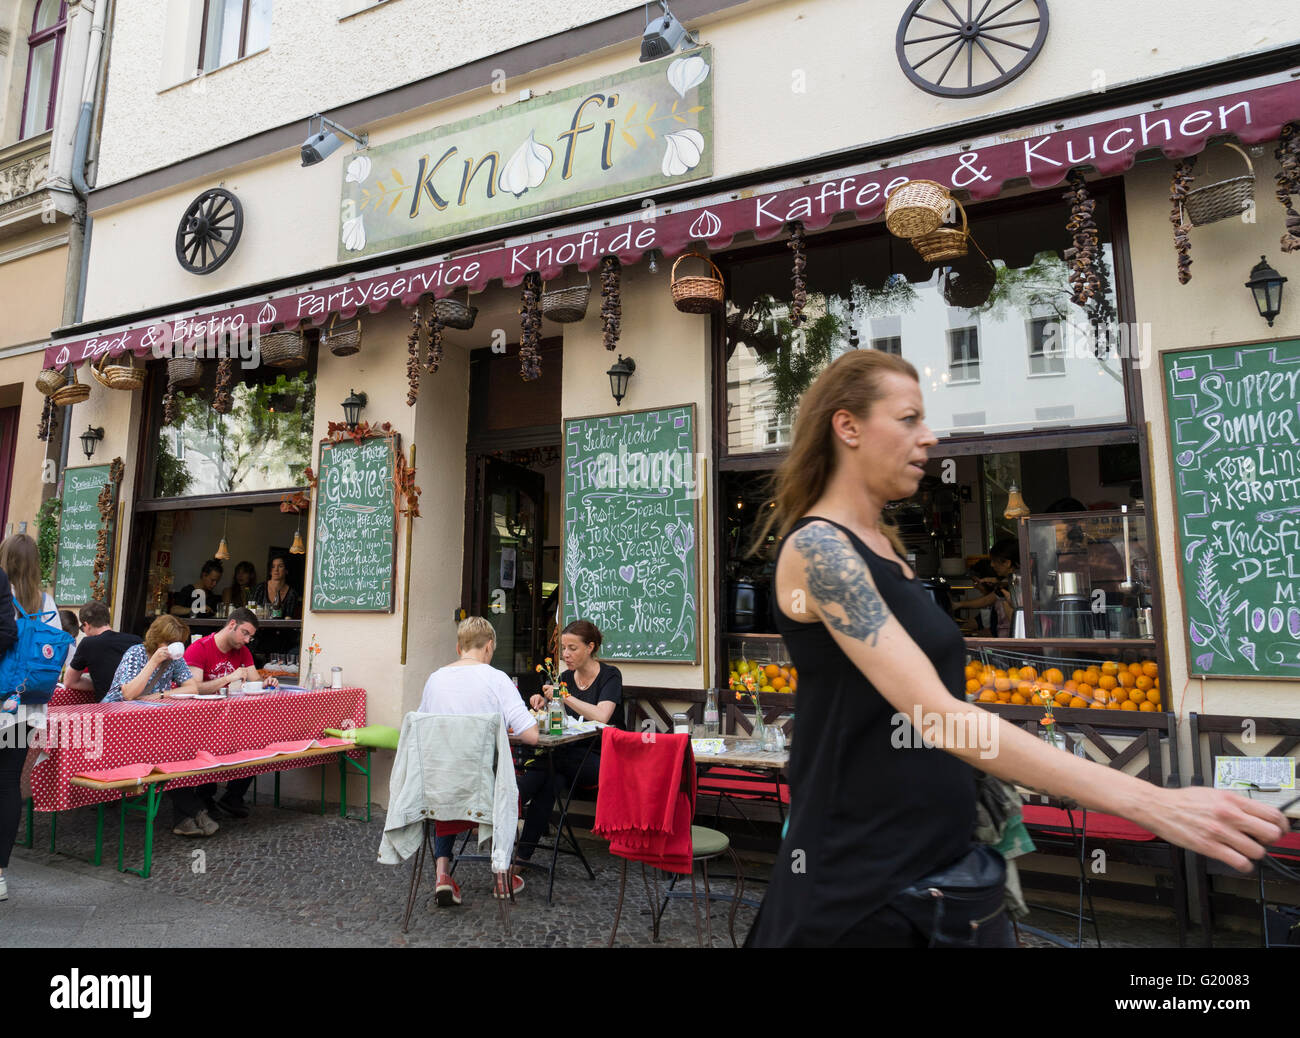 Knofi restaurant on Bergmannstrasse in Kreuzberg Berlin Germany Stock Photo